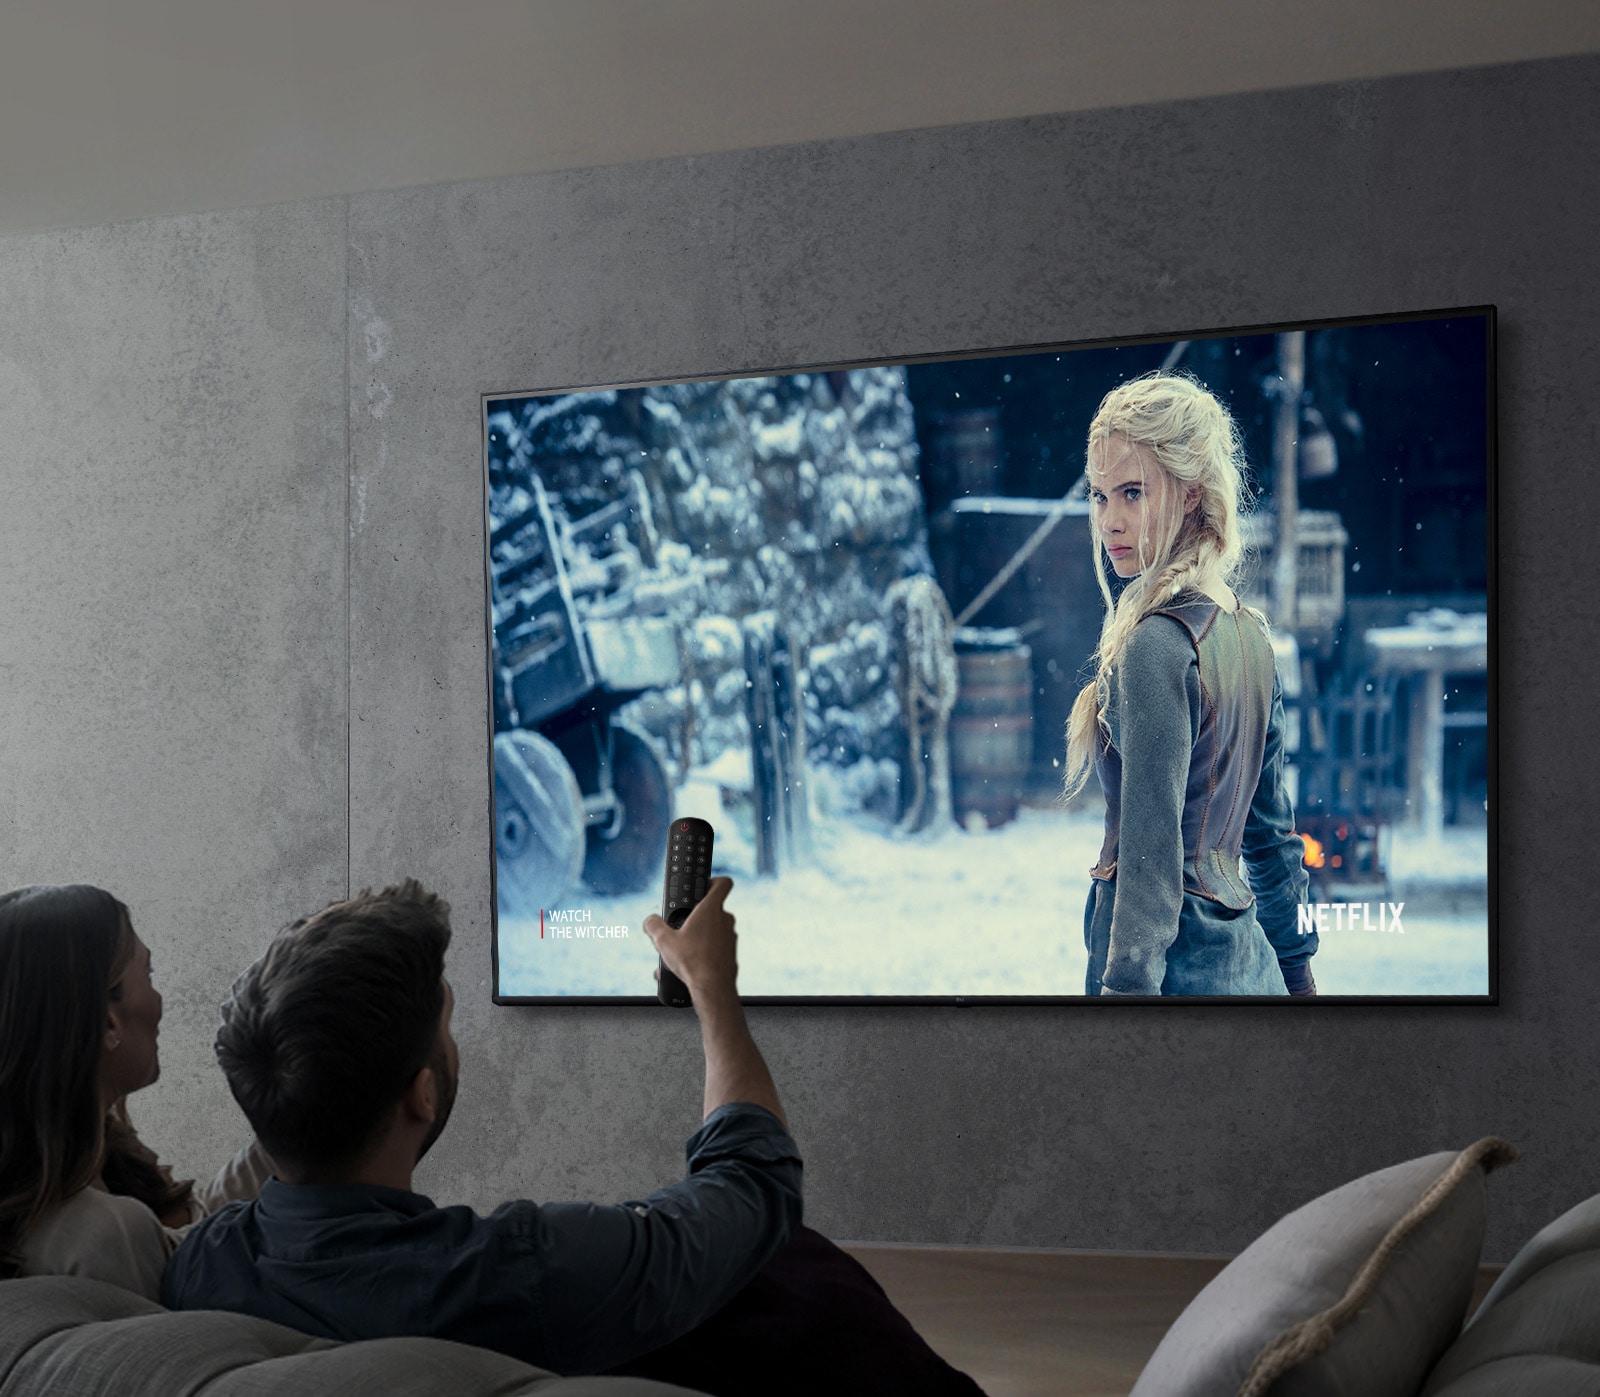 Εικόνα που δείχνει ένα ζευγάρι να παρακολουθεί μια εκπομπή σε μια τηλεόραση LG UHD.